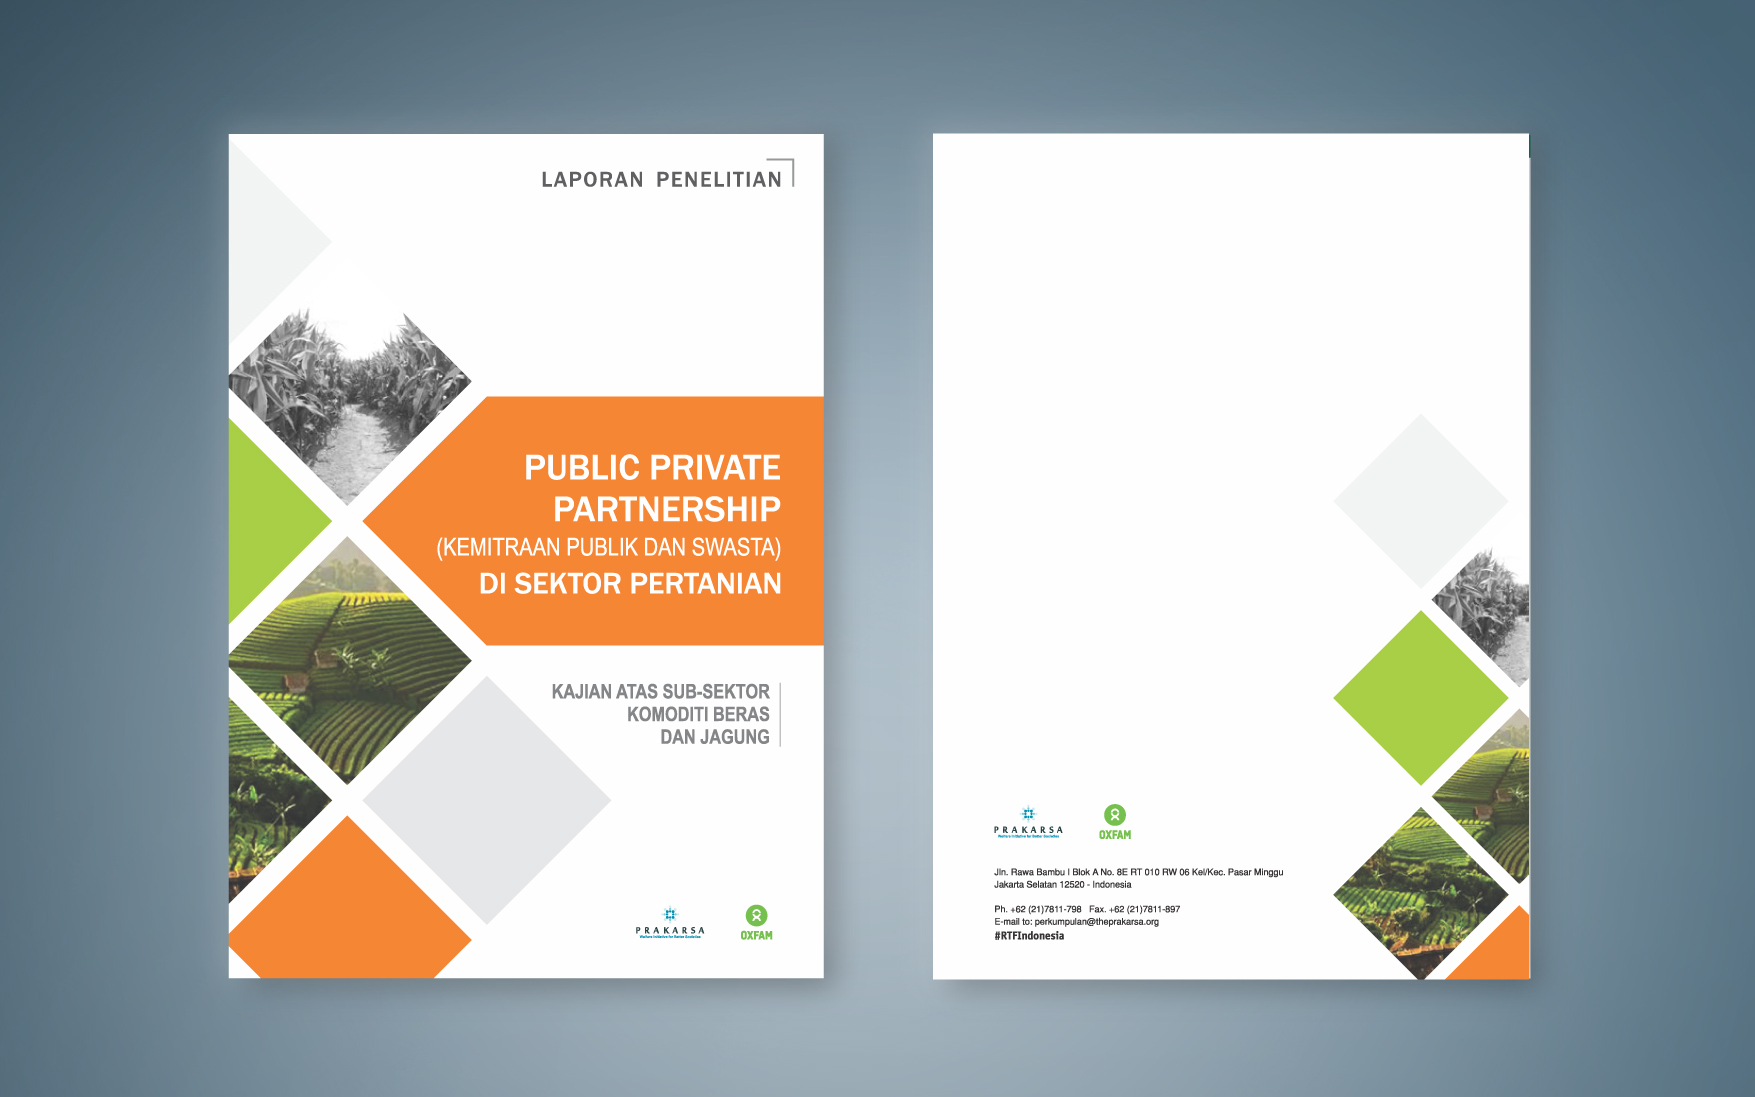 Public private partnerships. Public public partnership